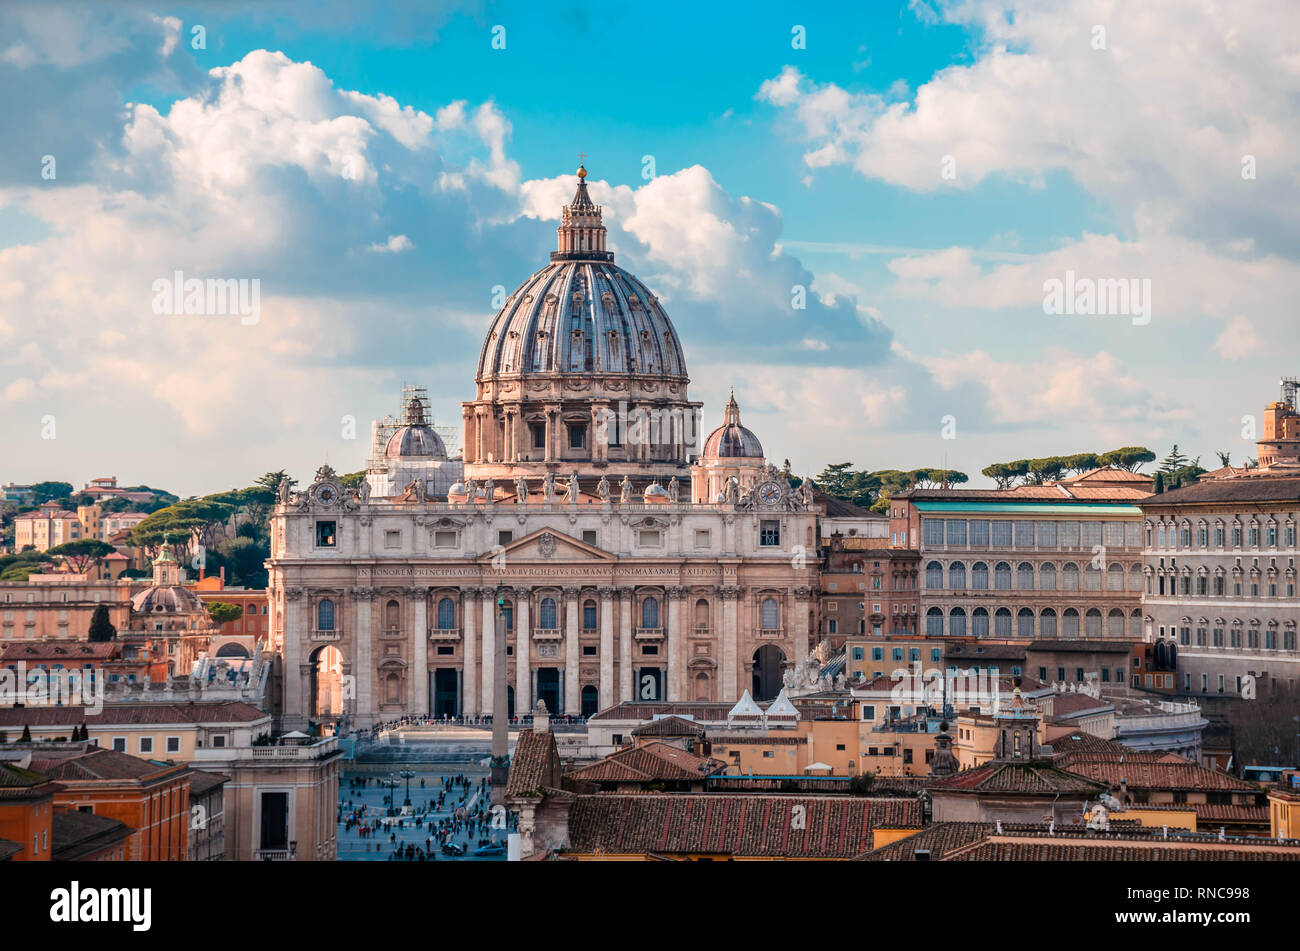 La Basilique St Pierre, l'une des plus grandes églises au monde et sites touristiques de Rome situé dans la ville du Vatican. Banque D'Images